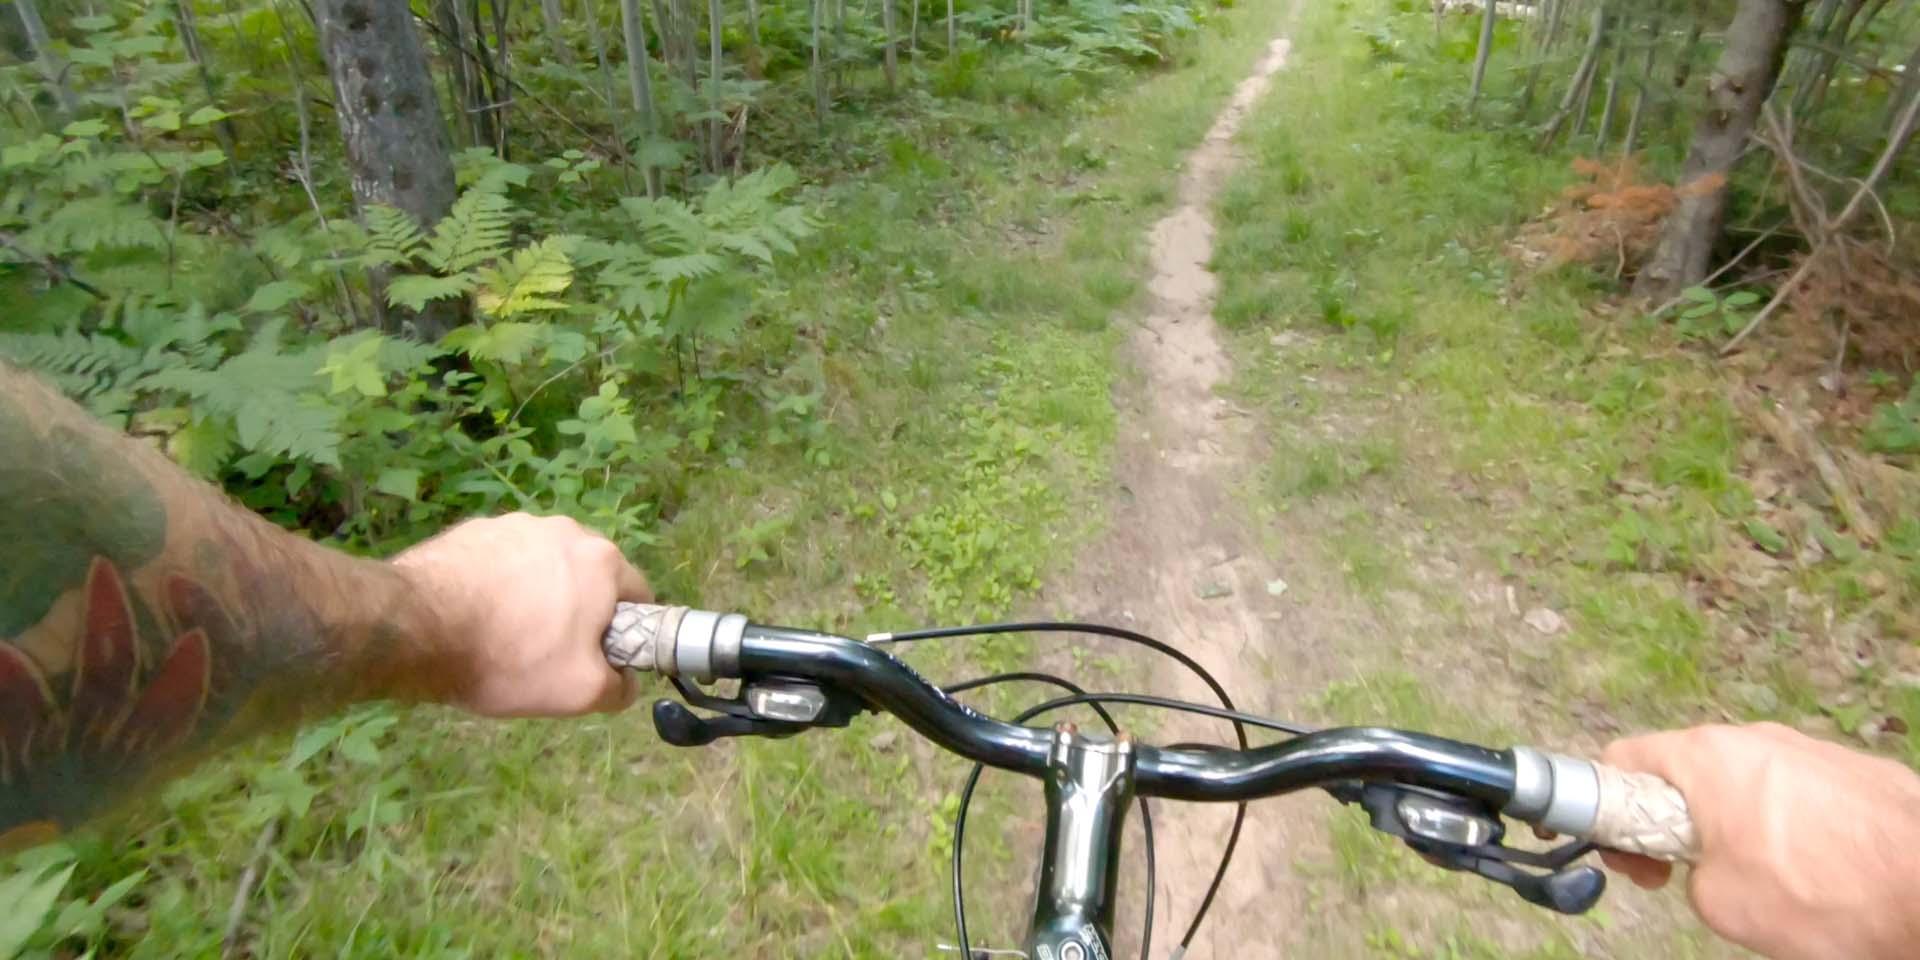 Biking a trail